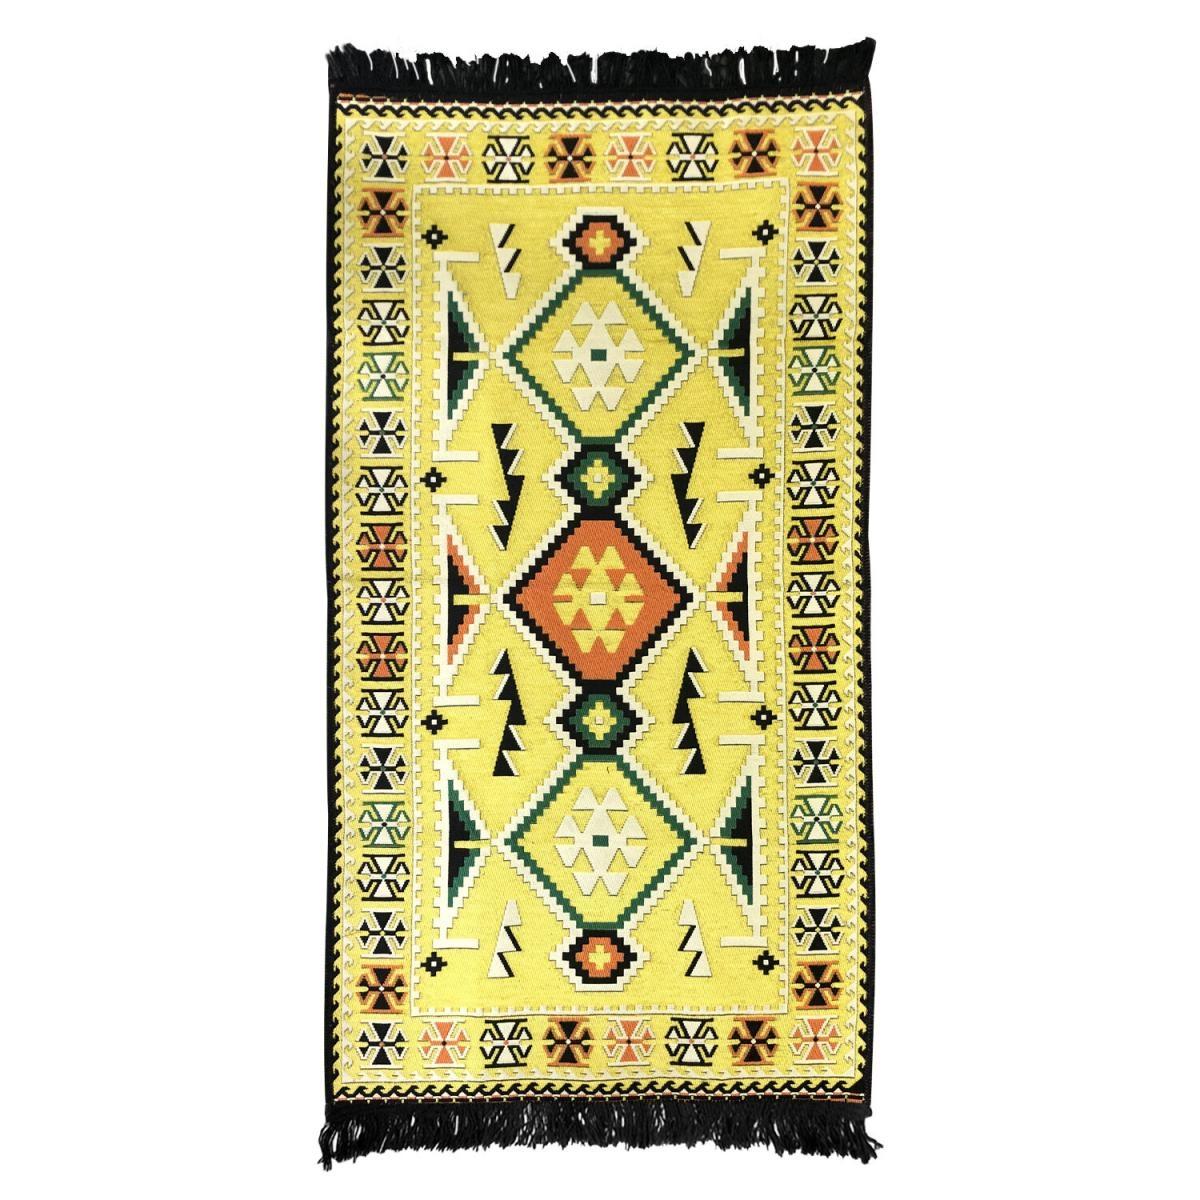 (165)黃色土耳其傳統文化工藝聚酯纖維棉線地毯80X155，地墊 毛墊 特式毯 防滑毯 棉織物料 吉祥圖案 特式品味 時尚擺設佈置 (VTR-CARPET-YELLOW-80155165)